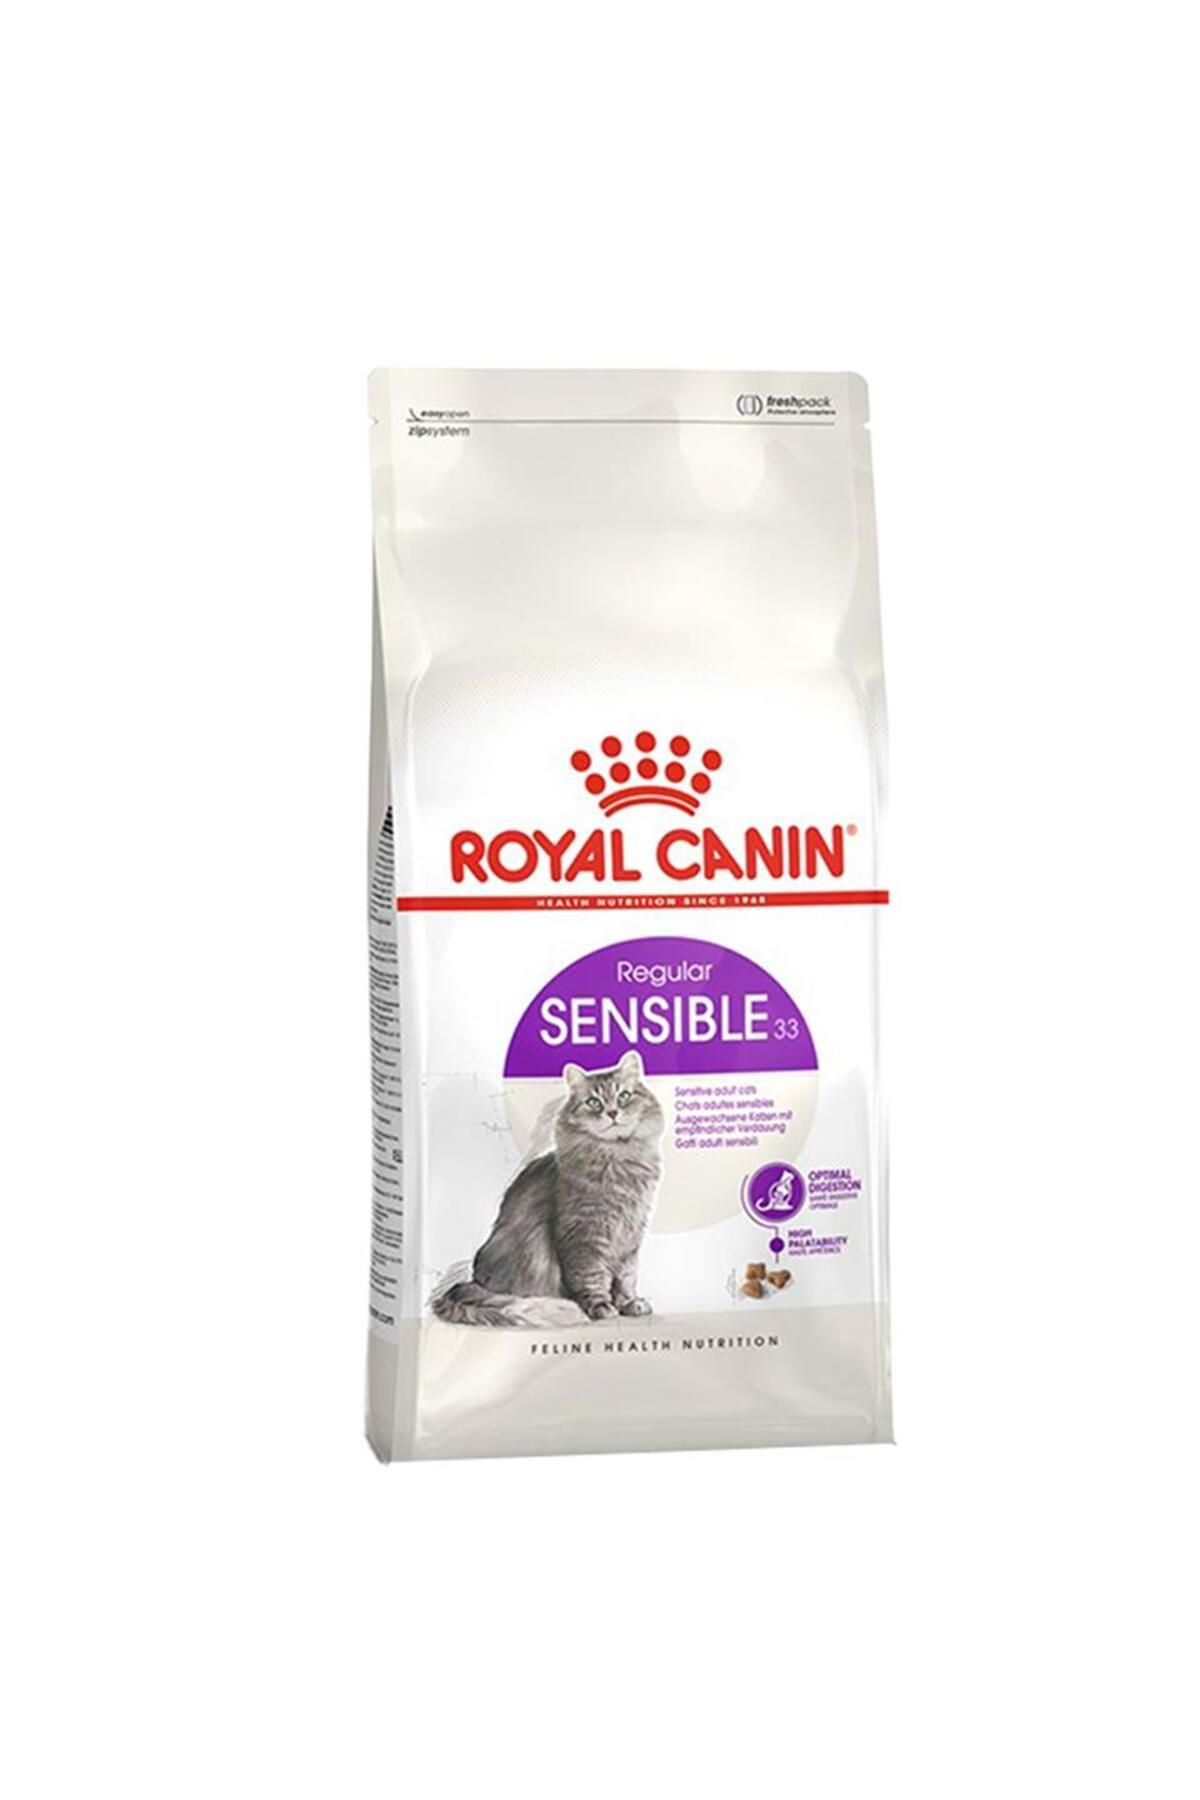 Royal Canin ® Sensible 33 Hassas Sindirimi Destekleyici Yetişkin Kedi Maması 2 Kg